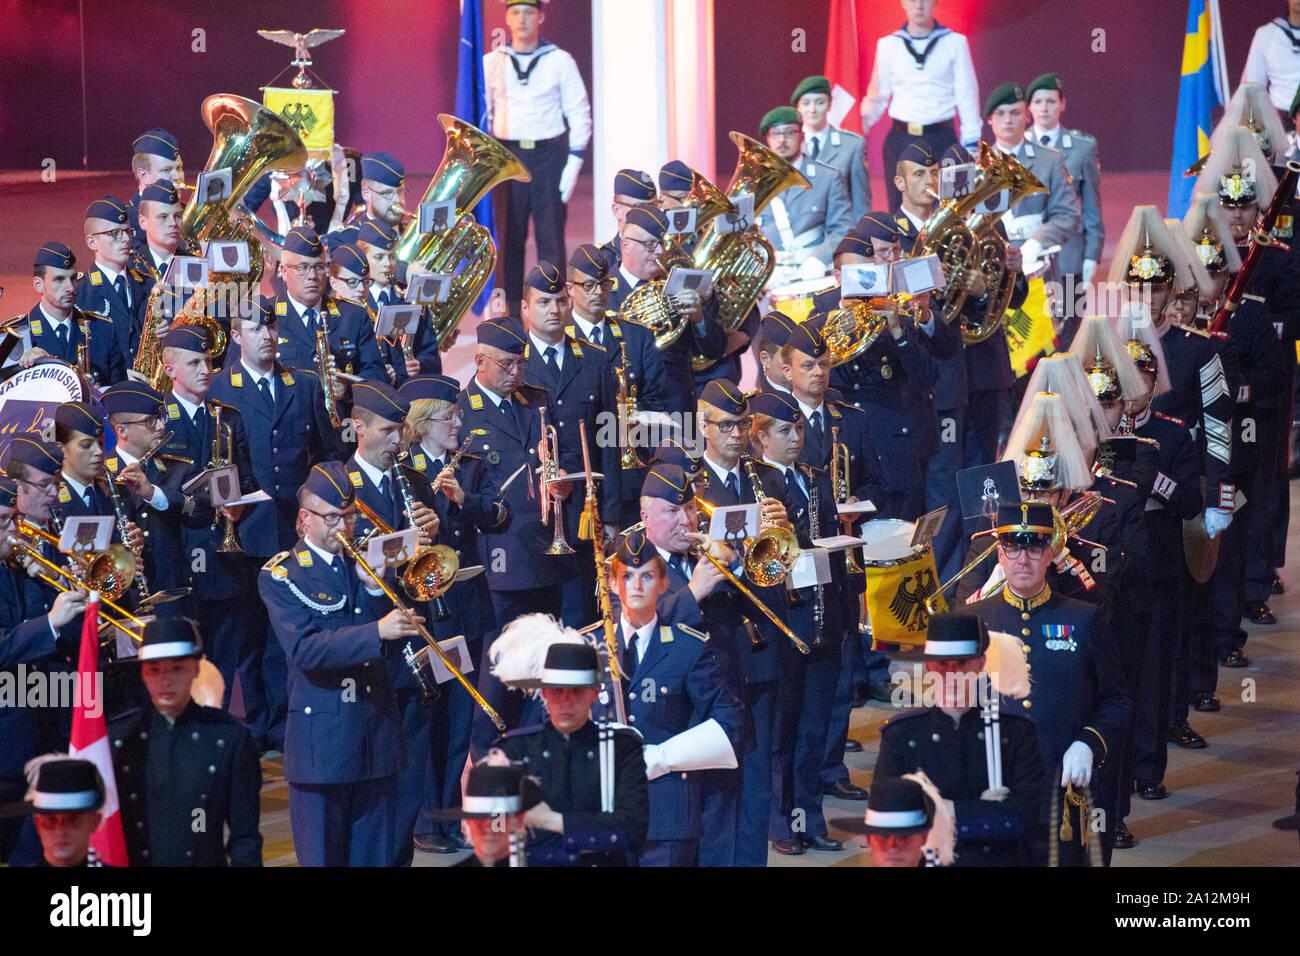 Finale und Abschlussaufstellung des Musikfestes der Bundeswehr, Internationales Militär Tattoo im ISS Dome. Düsseldorf, 21.09.2019 Stock Photo